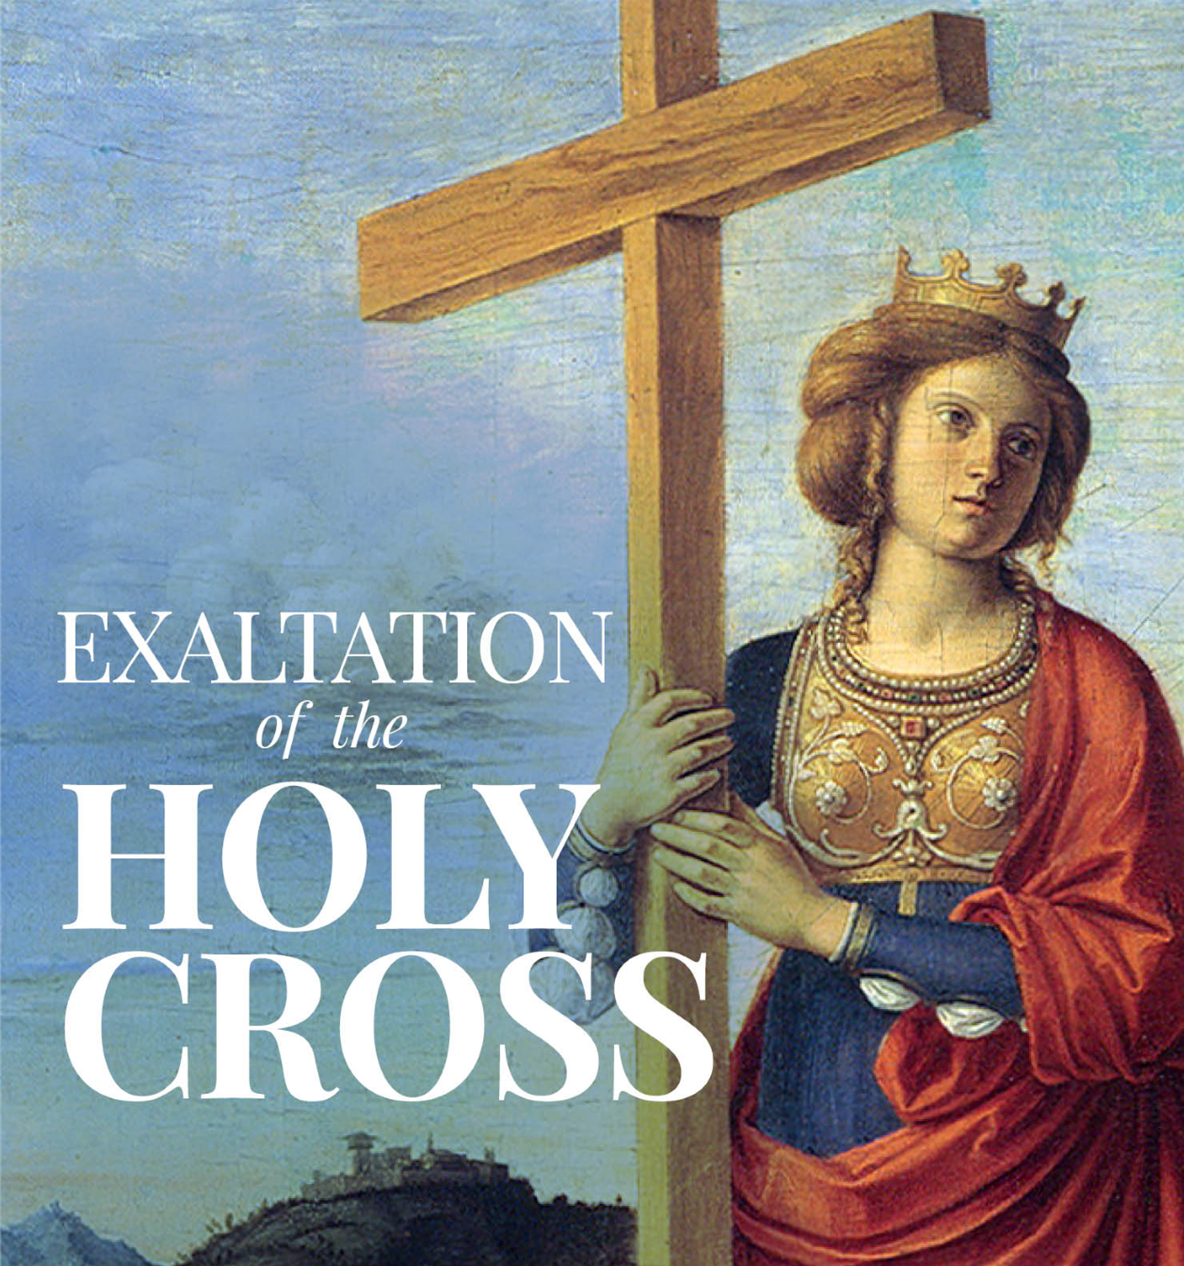 September 12, 2021 - The Exaltation of the Holy Cross